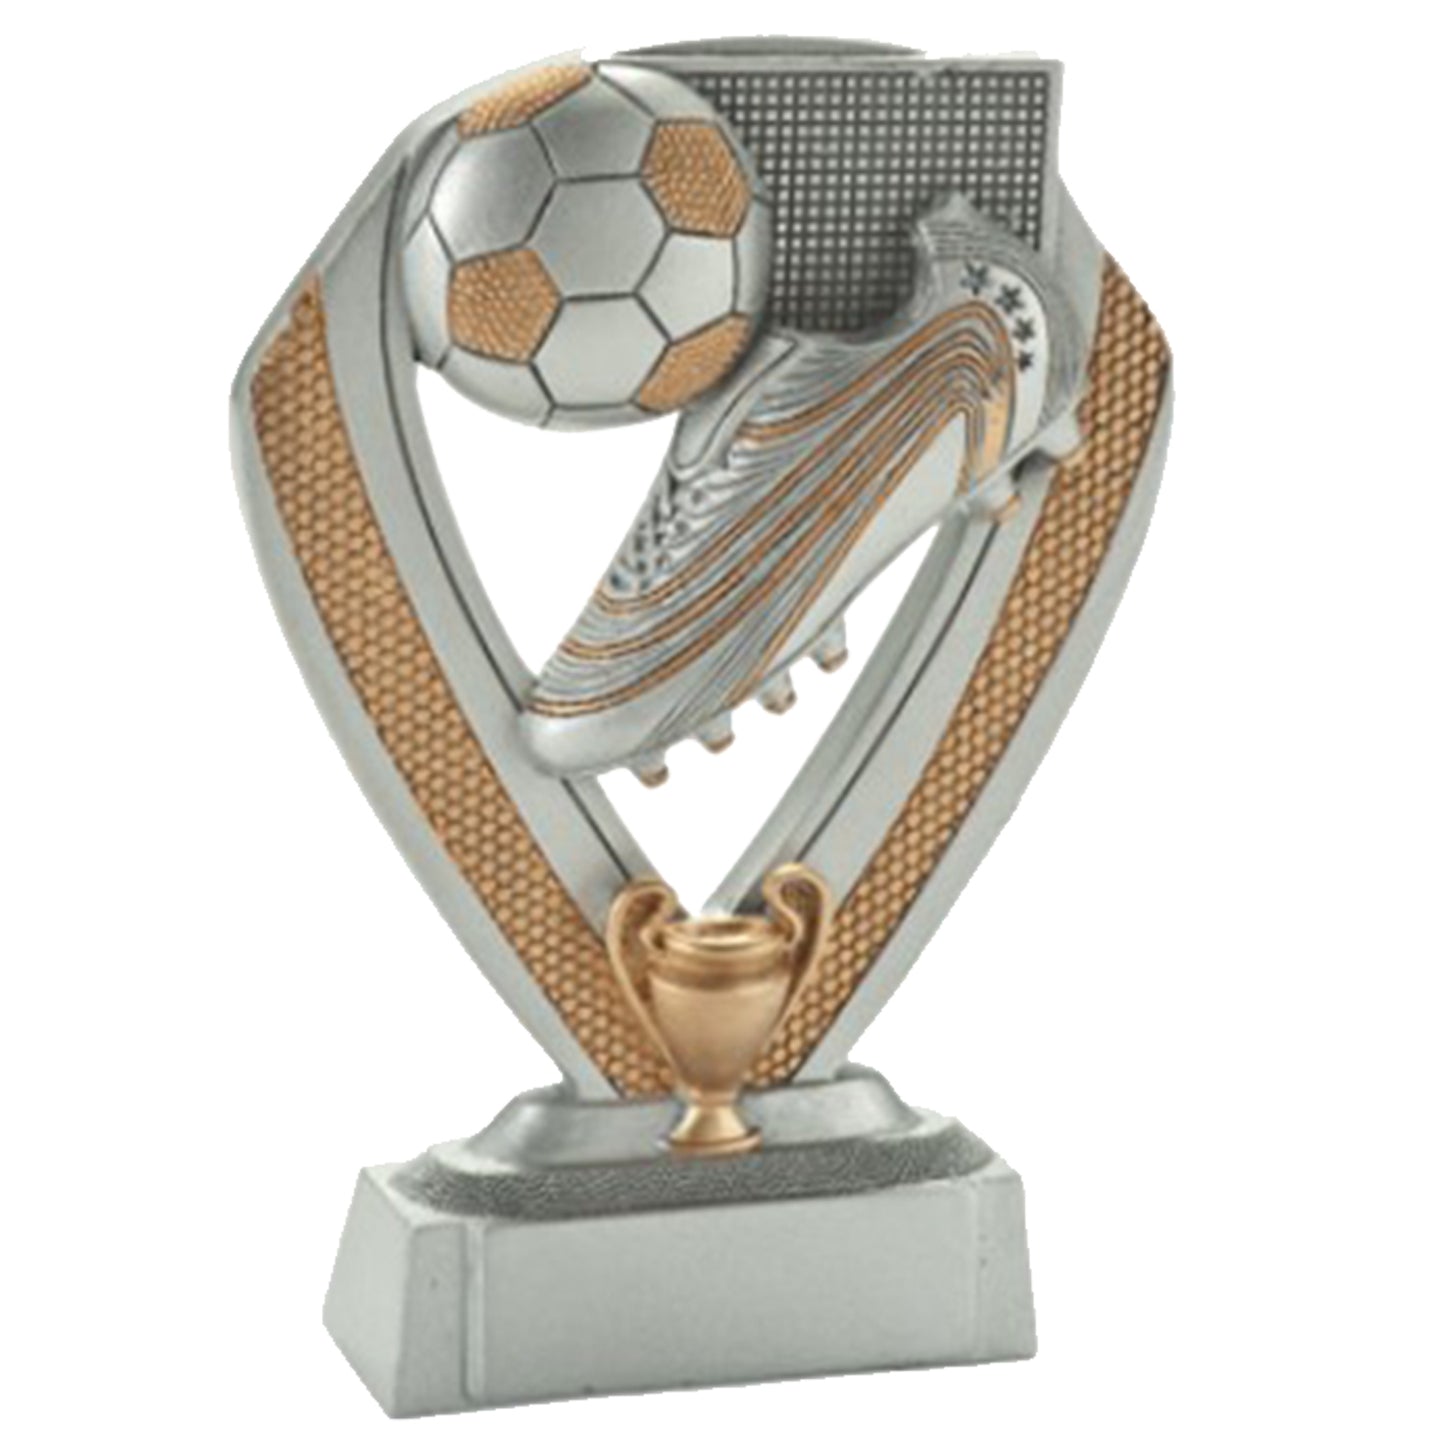 Premiazioni personalizzate premio calcio